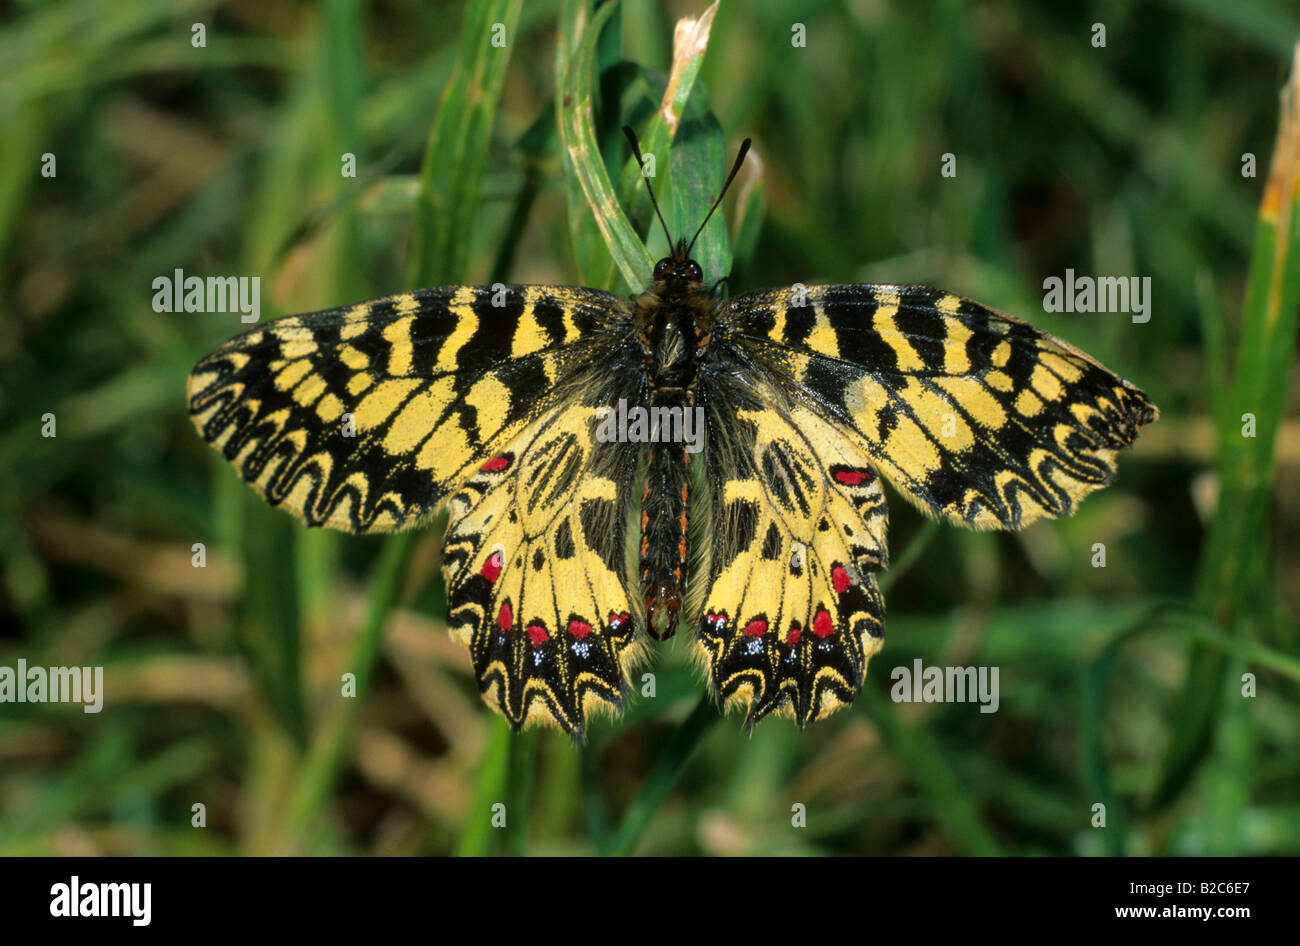 Festoon meridional (Zerynthia polyxena), Papilionidae familia, Lagos de Hortobagy, Hungría, Europa Foto de stock